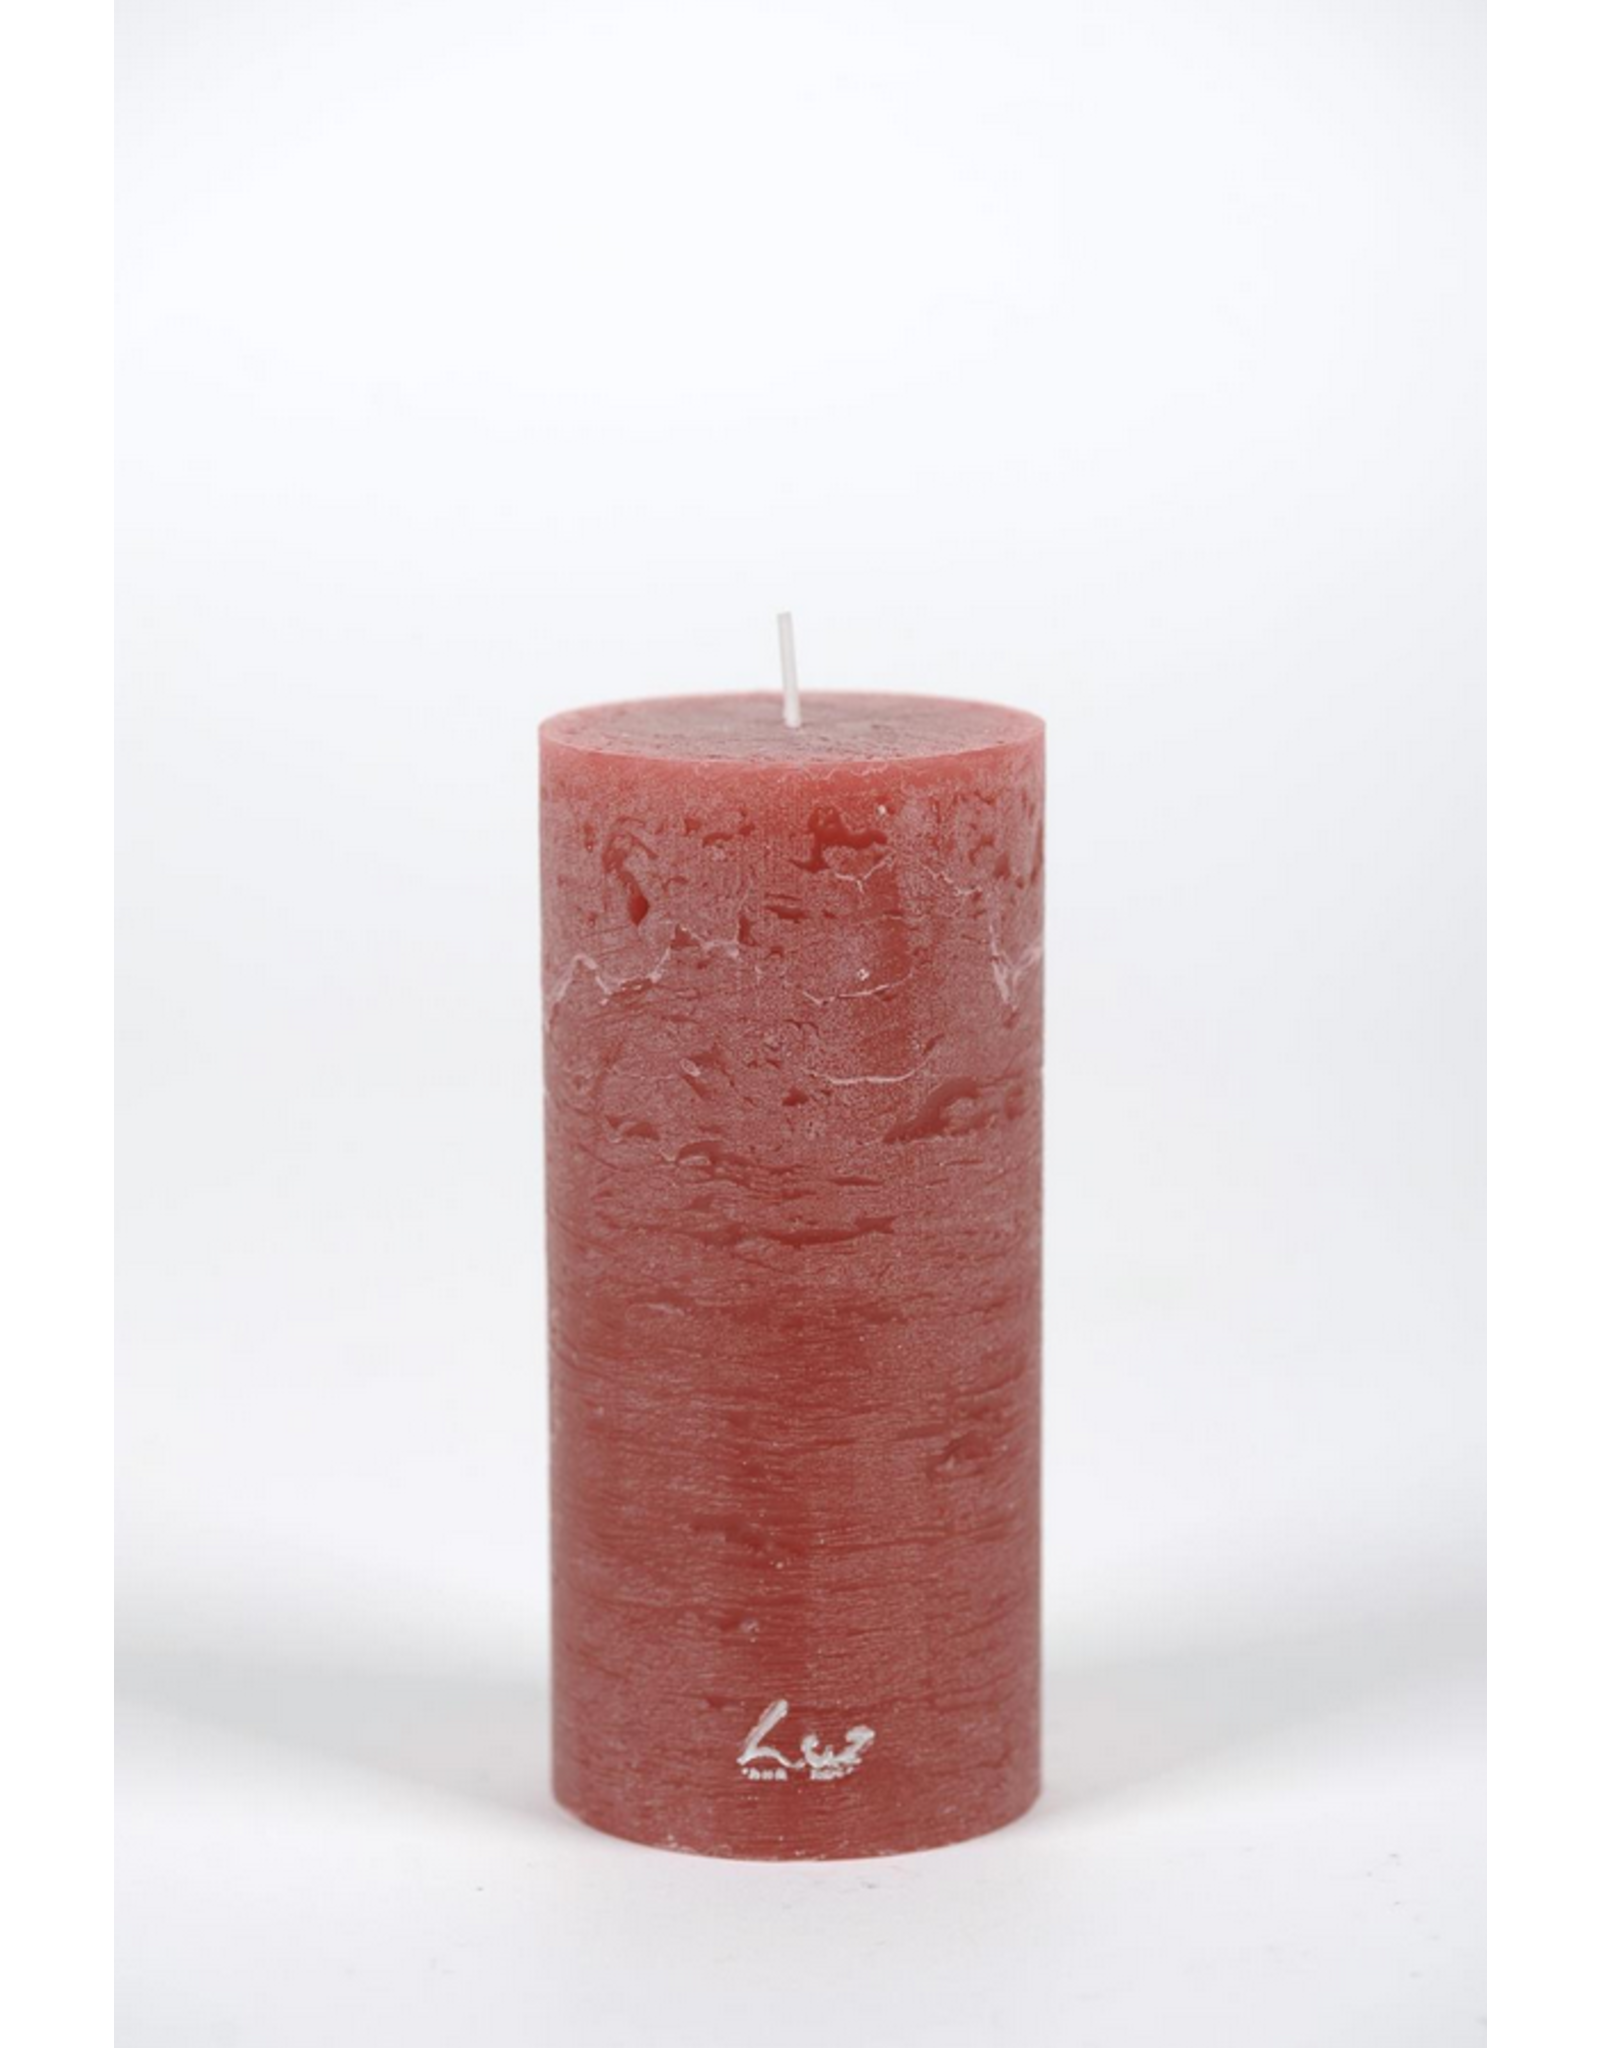 Rasteli 15cm Sequoia Rustic Candle